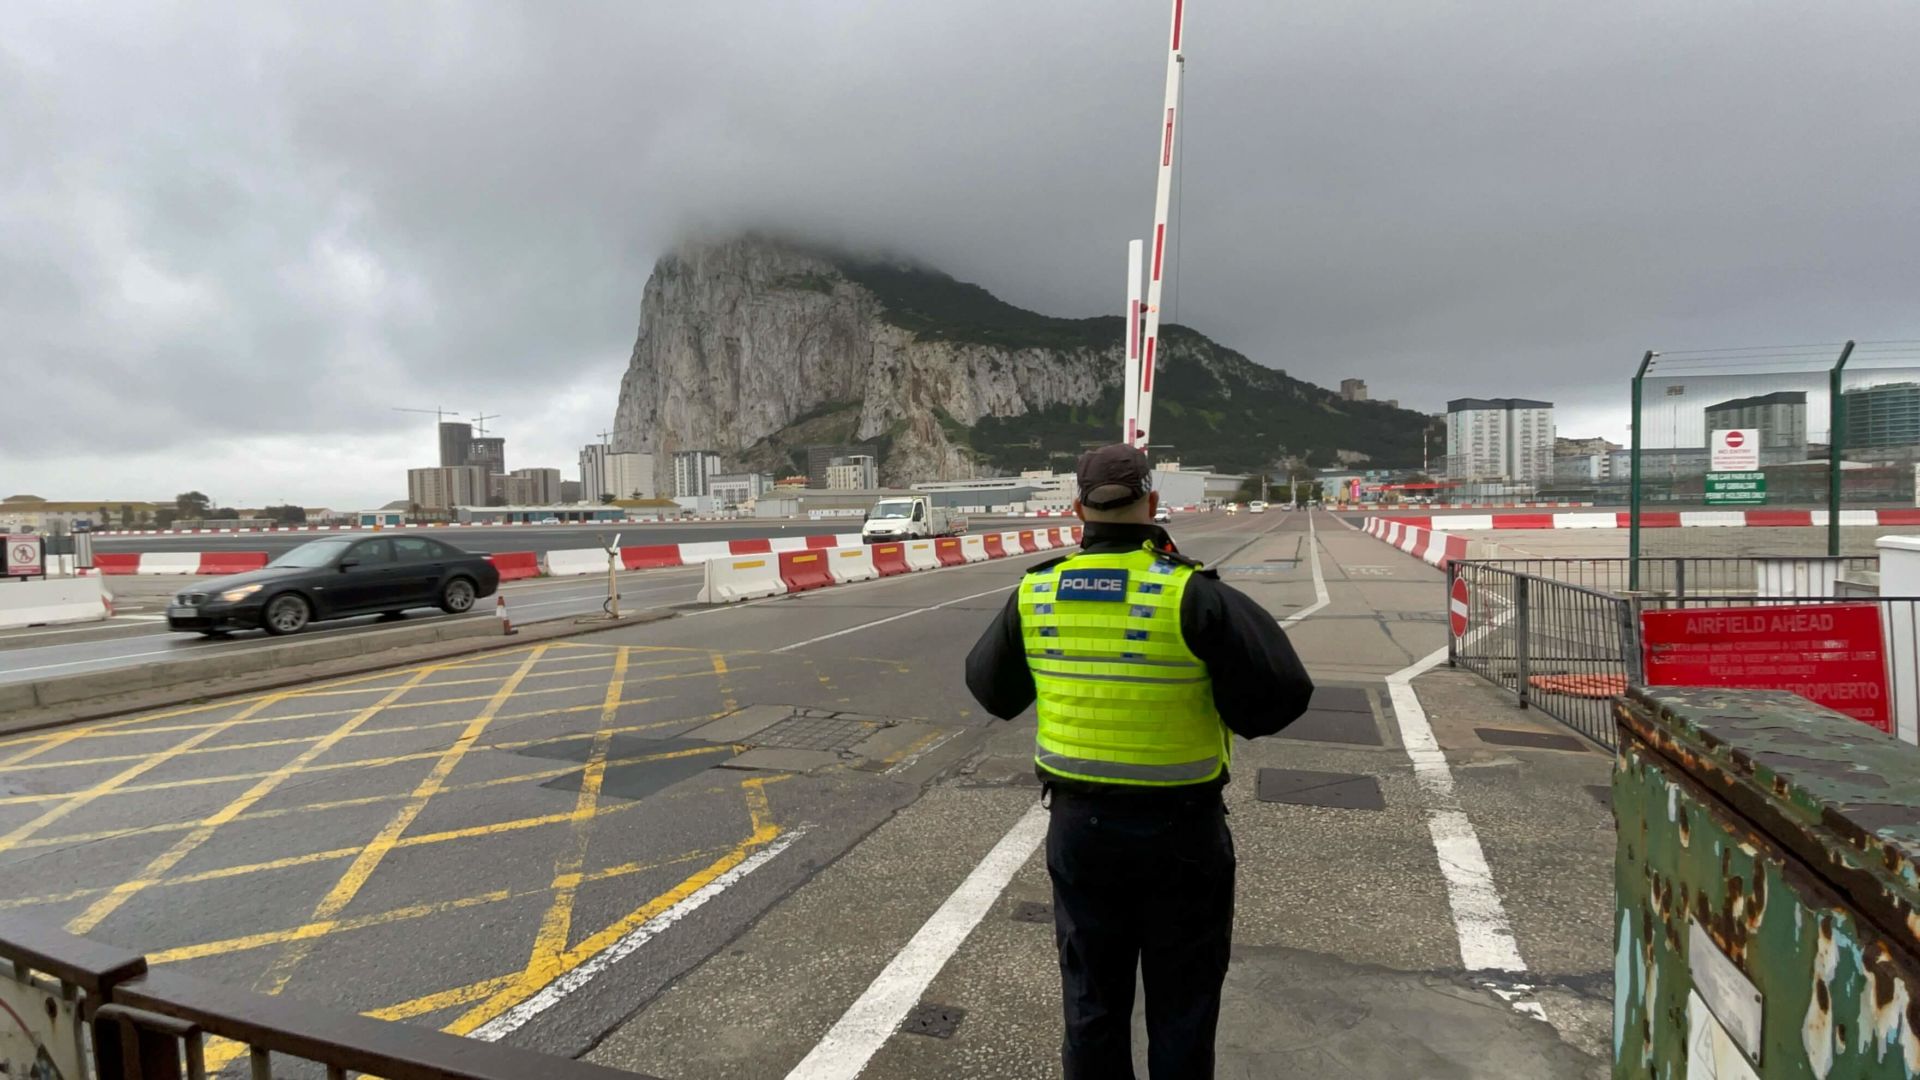 Dia nublado com a pedra de Gibraltar encoberta pela neblina. Em frente, a pista do aeroporto que fica no meio da cidade e um guarda que cuida do trânsito, trancado para a passagem do avião.